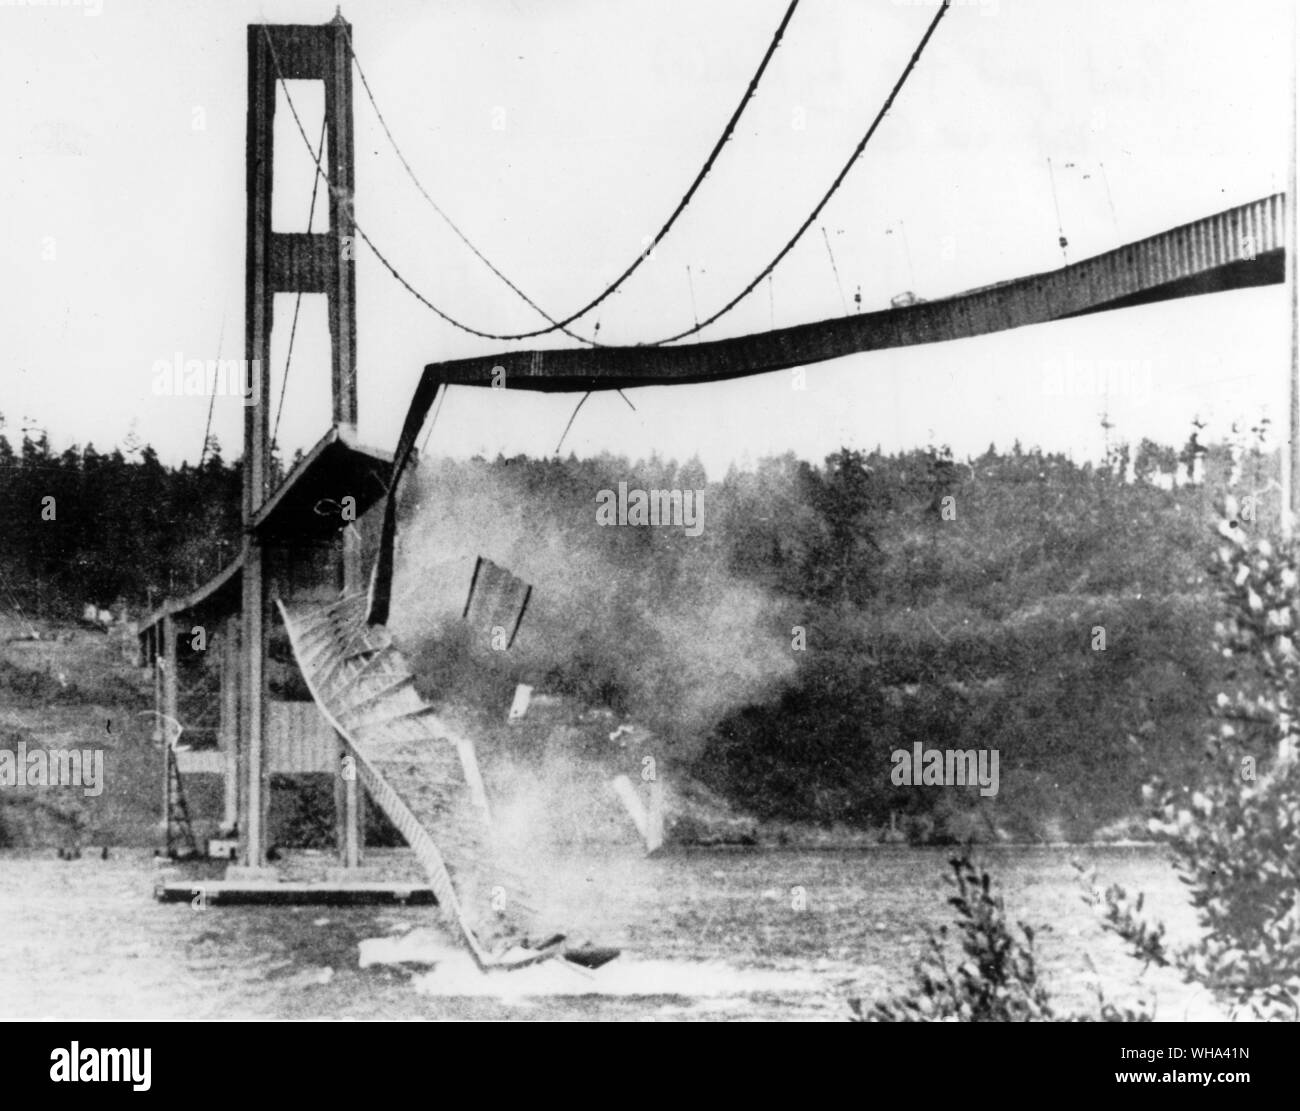 Großer Teil der konkreten Fahrbahn in der Mitte der neuen Tacoma Narrows Bridge raste in Puget Sound 7. November 1940 Starke Winde die Brücke zu beeinflussen, Undulate und schließlich einstürzen unter der Belastung verursacht Stockfoto